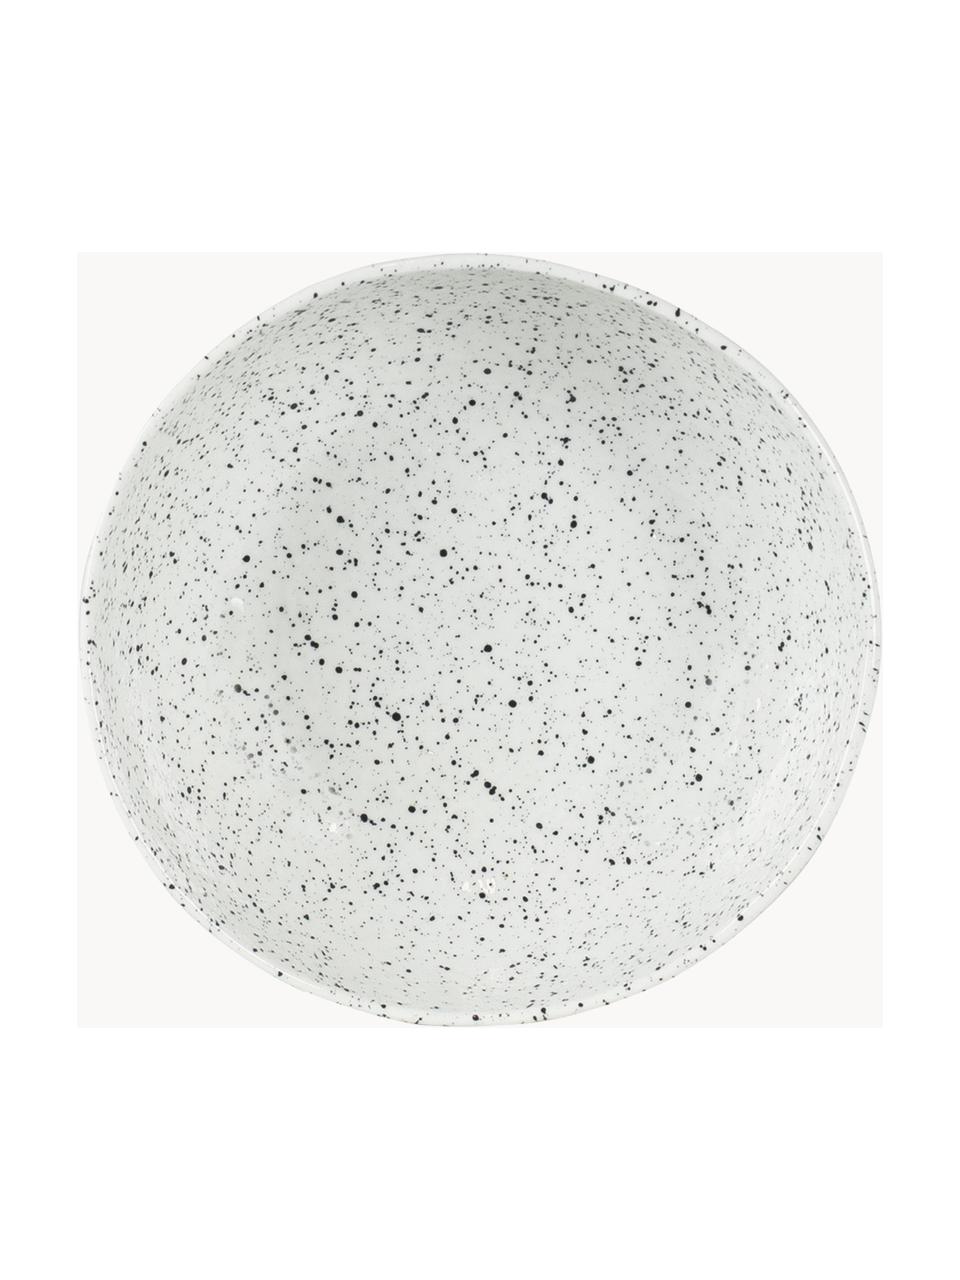 Porzellan-Suppenteller Poppi, 2 Stück, Porzellan, Weiss, schwarz gesprenkelt, Ø 20 x H 8 cm